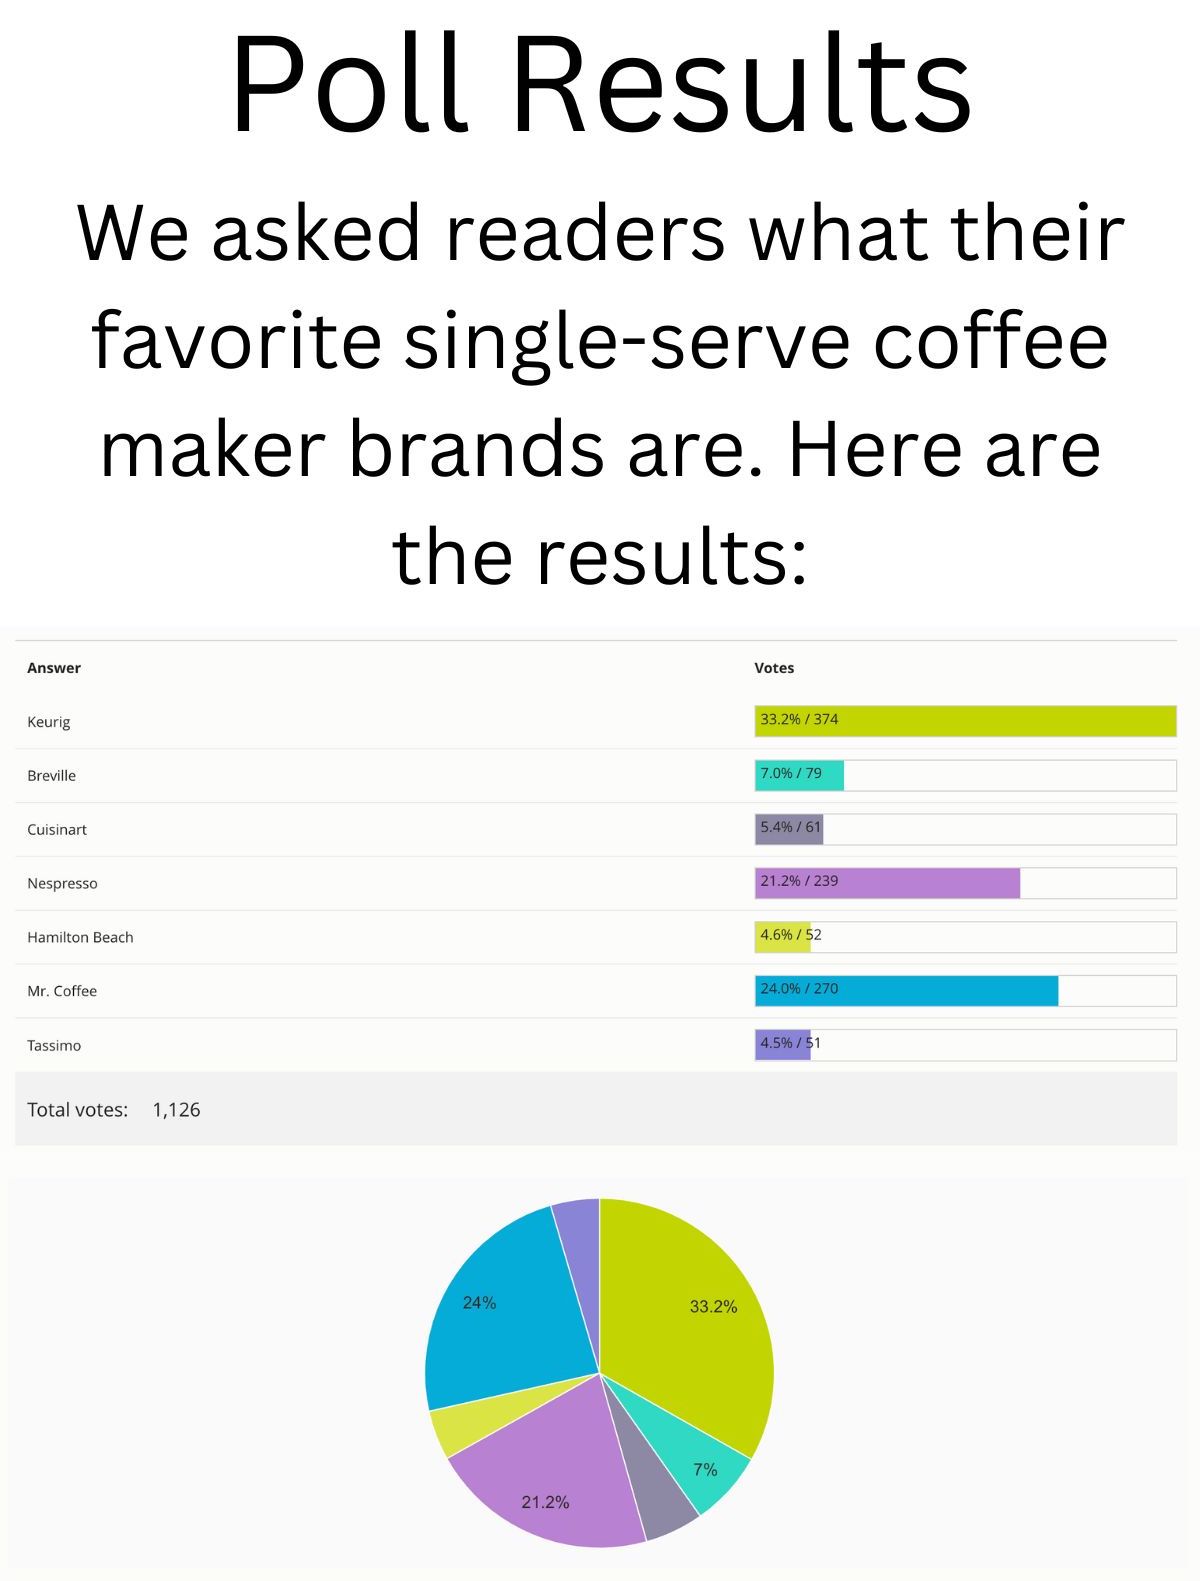 单杯咖啡机品牌最受读者欢迎-投票结果